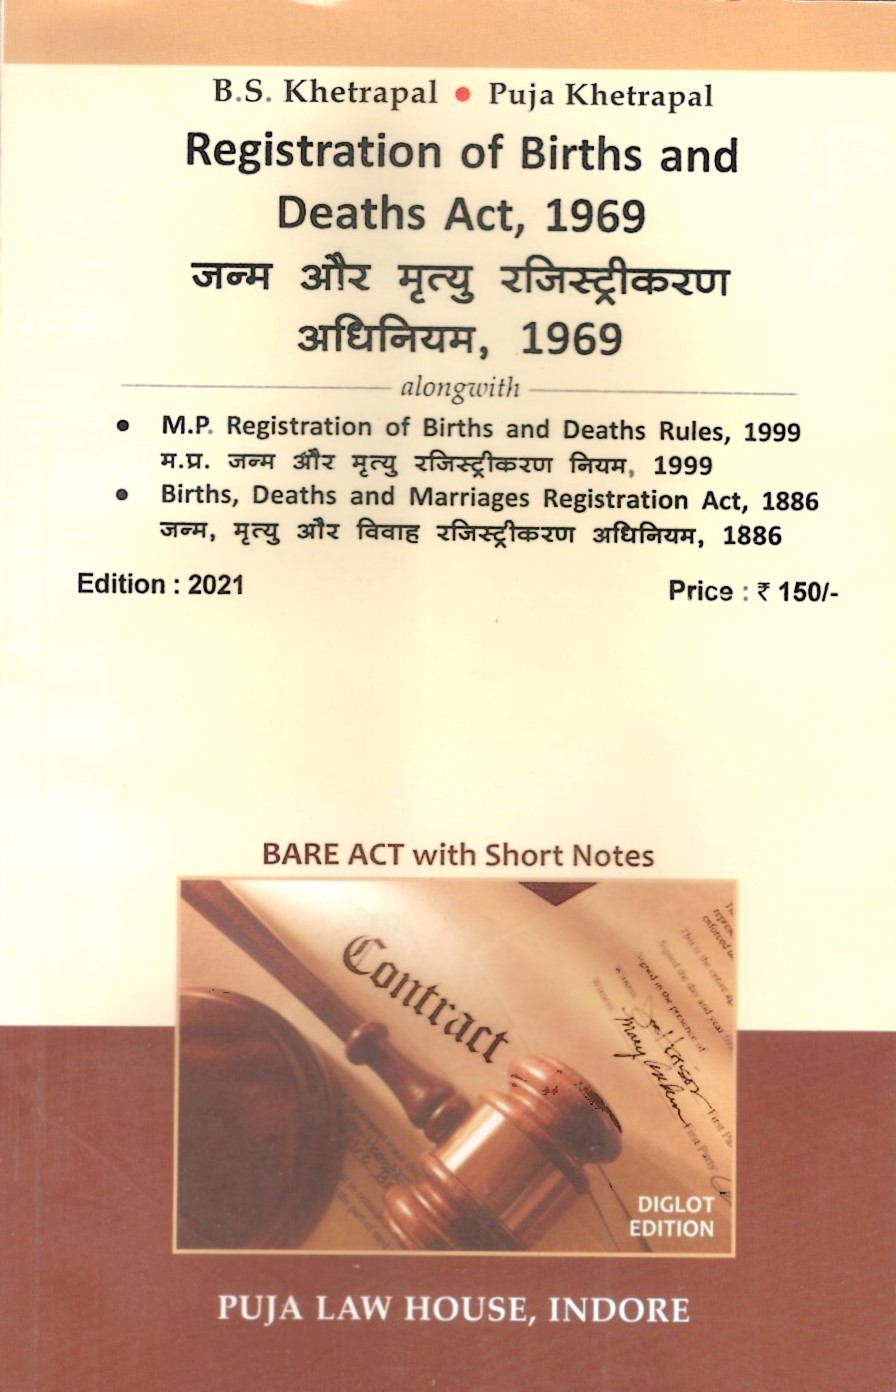 Registration of Birth & Death Act, 1969 with Chhattisgarh Registration of Birth & Death Rules, 1999 / जन्म और मृत्यु रजिस्ट्रीकरण अधिनियम, 1969 साथ ही छत्तीसगढ़  जन्म और मृत्यु रजिस्ट्रीकरण नियम, 1999